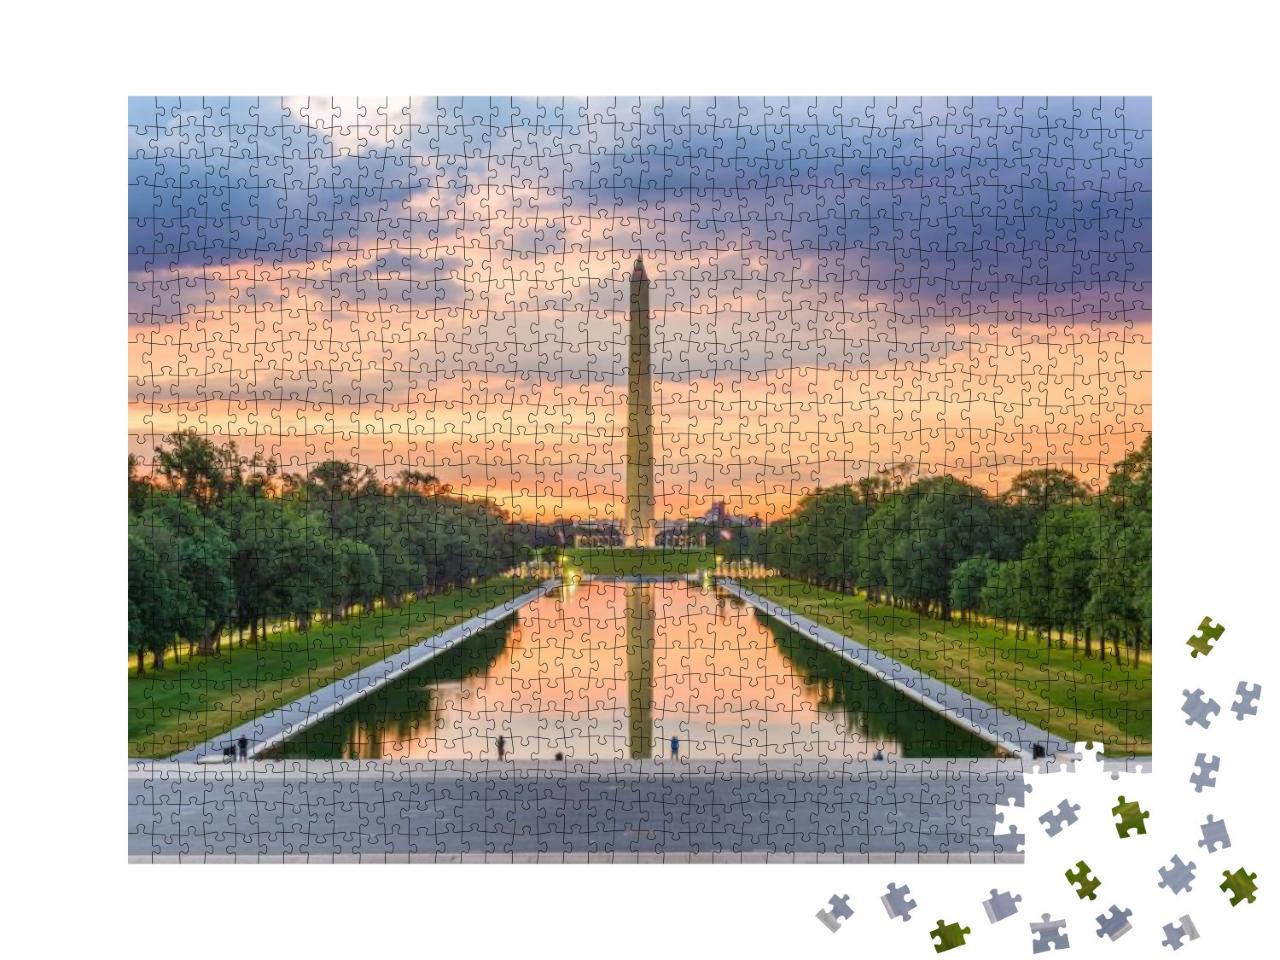 Puzzle 1000 Teile „Washington Monument am Reflecting Pool, USA“